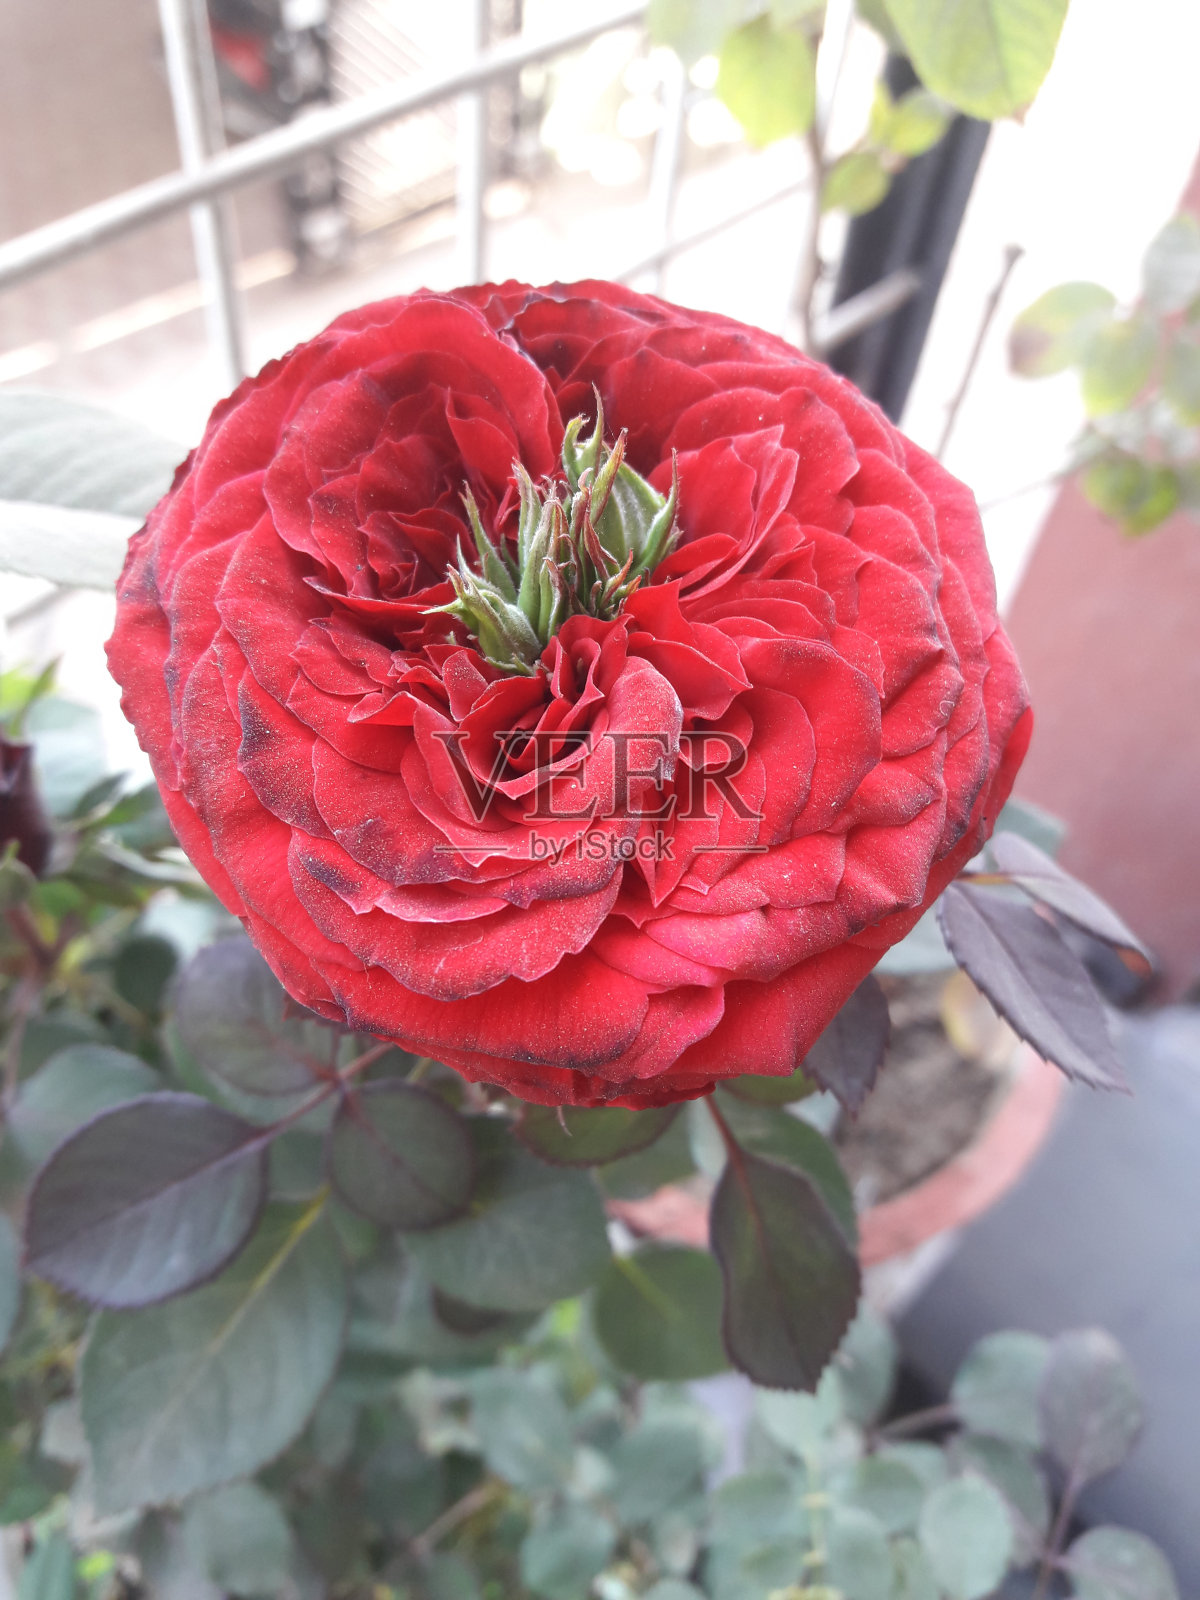 稀有的红玫瑰花照片摄影图片